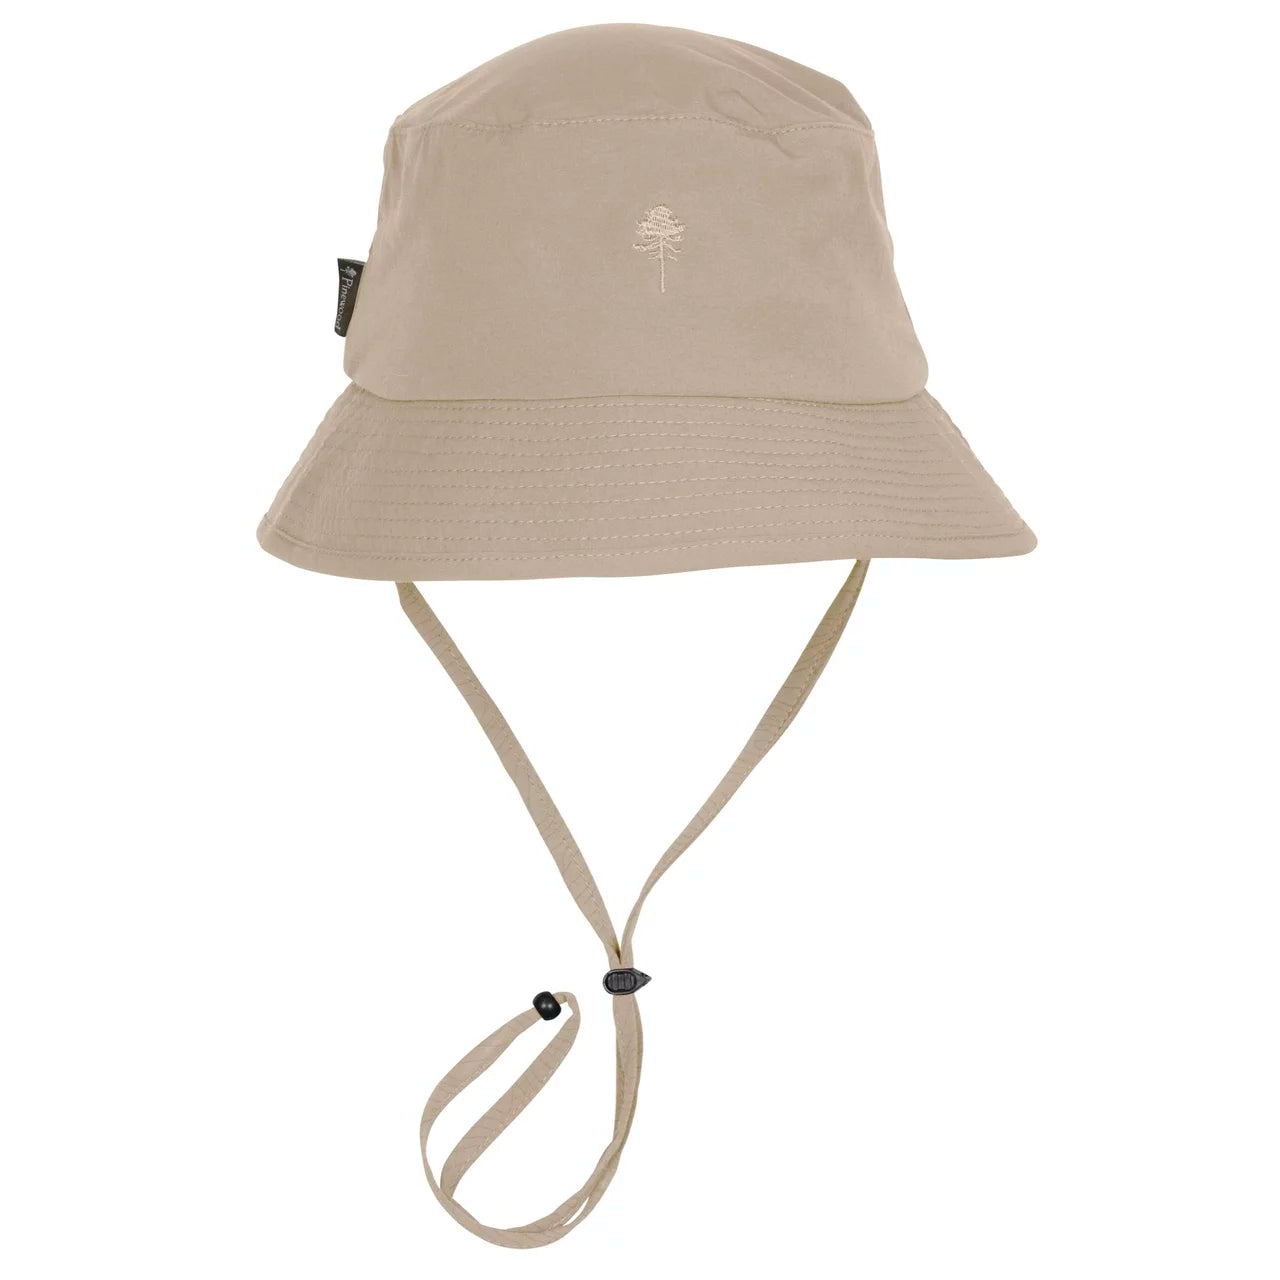 Sombrero Everyday Travel Safari Hat 1137